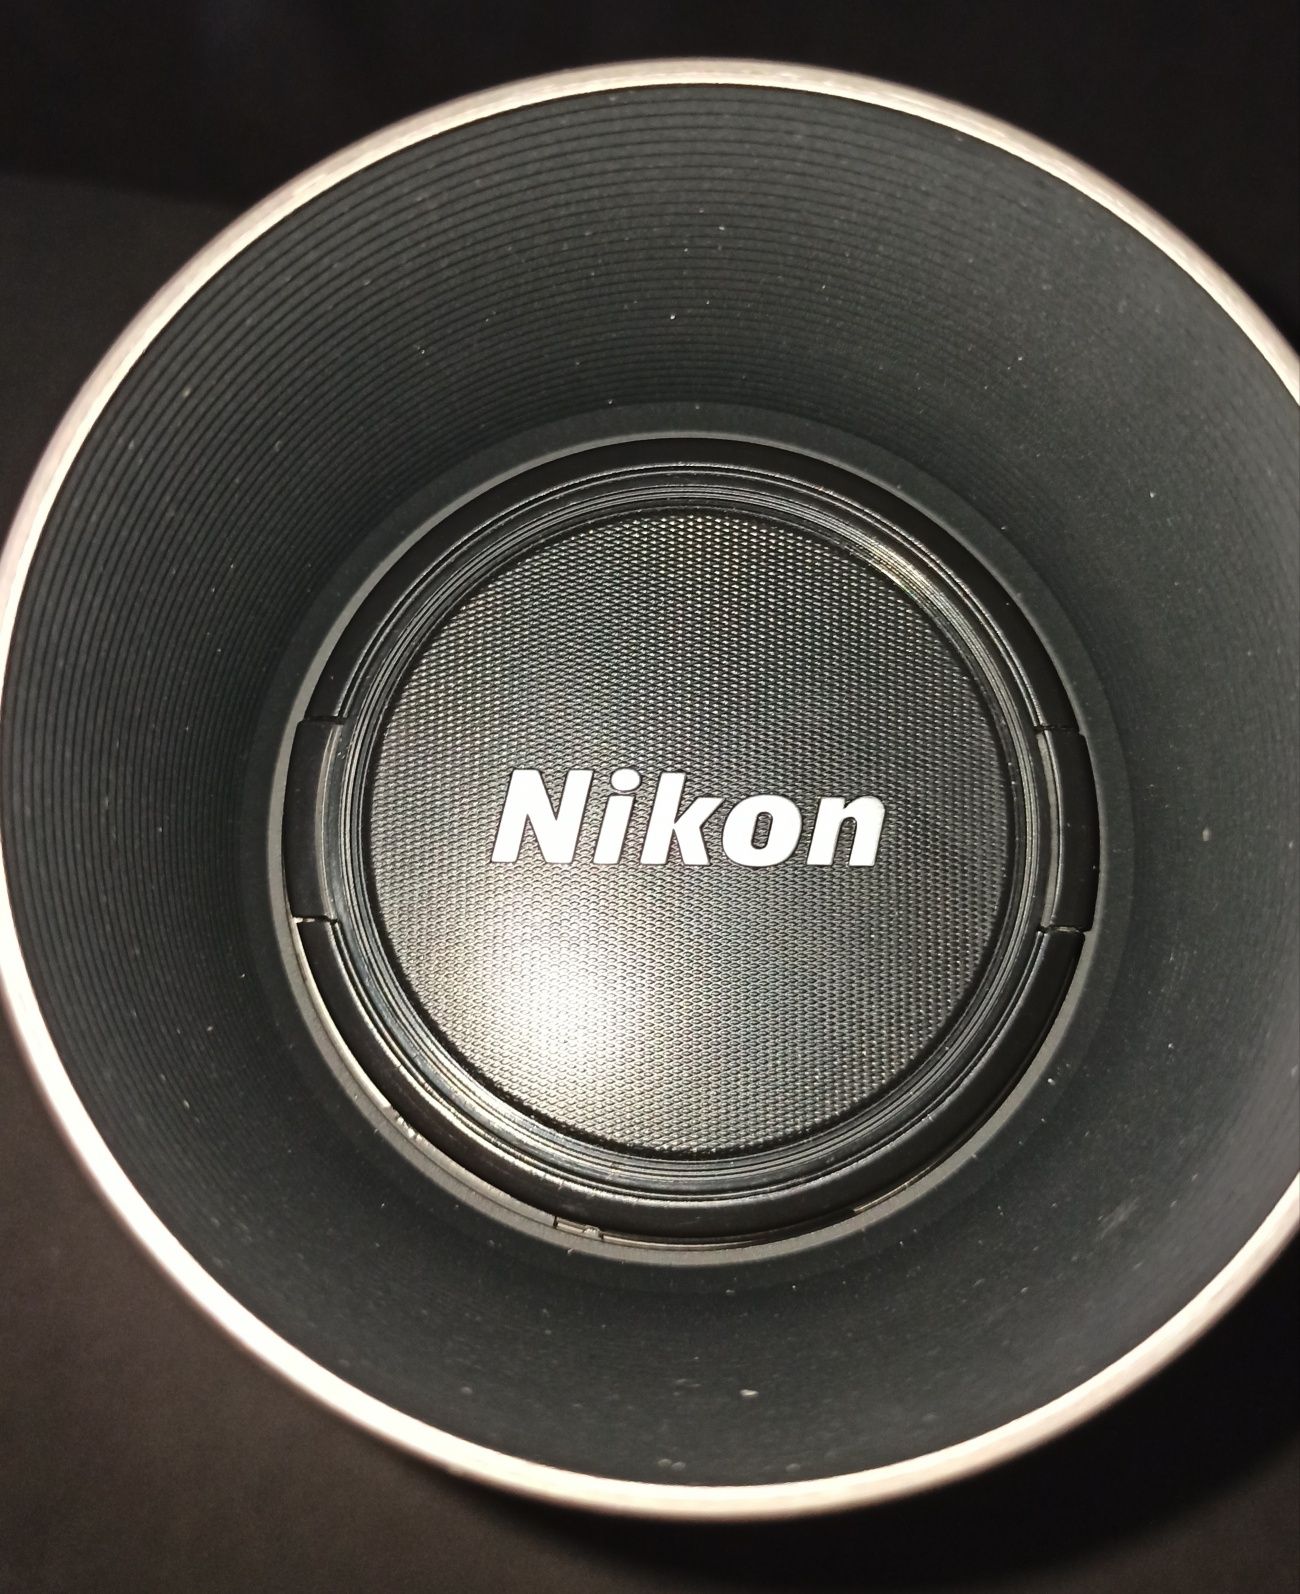 Nikon AF Nikkor 70-300mm 1:4-5.6G